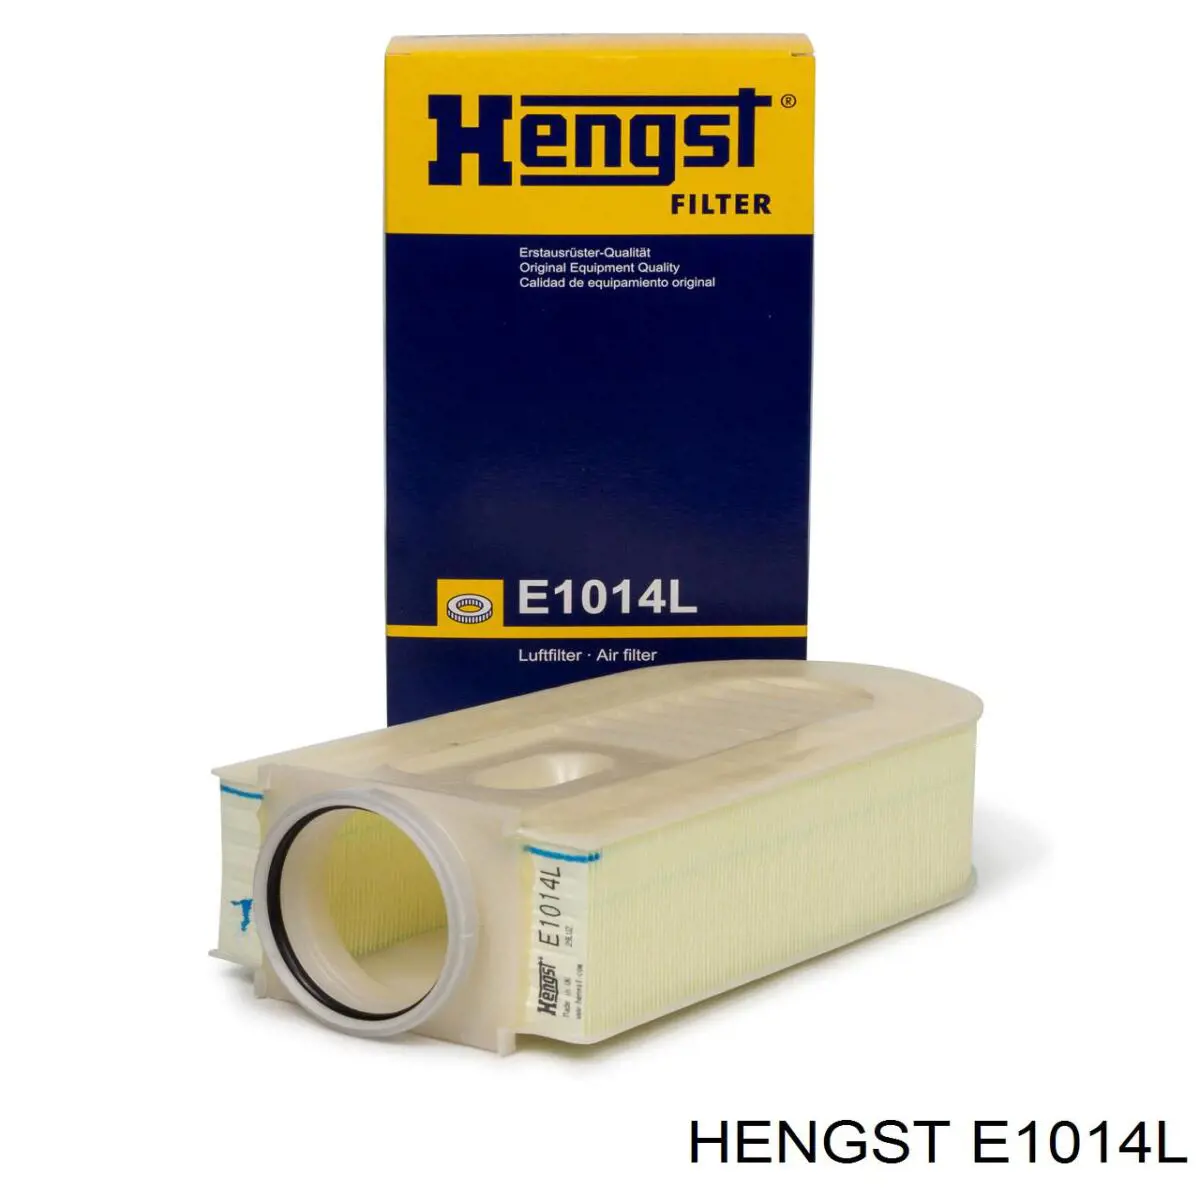 E1014L Hengst filtro de aire